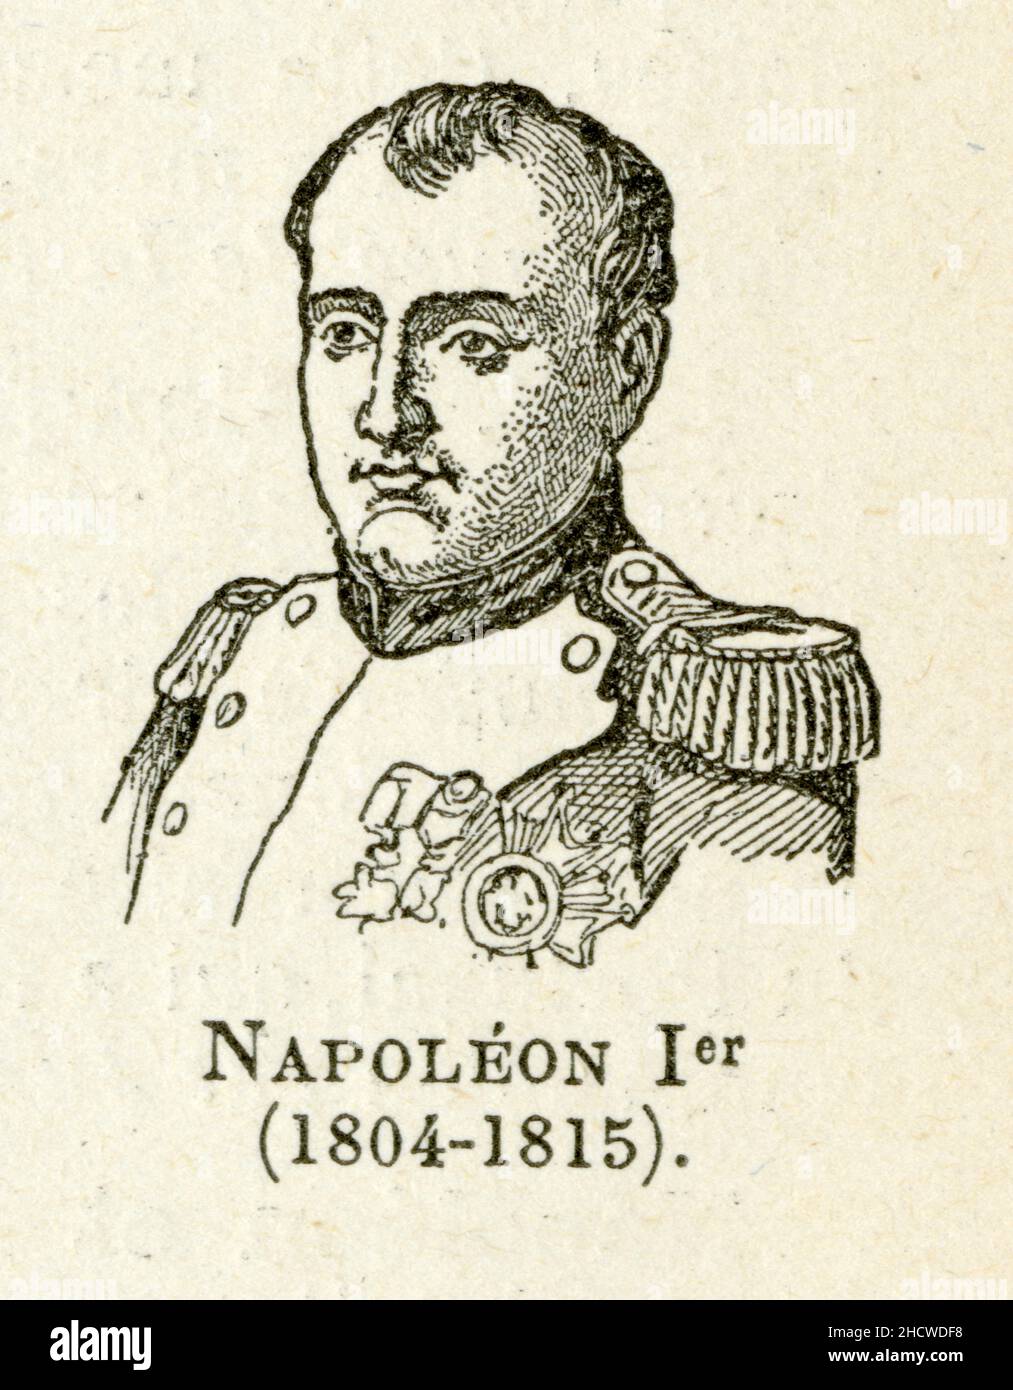 Napoléon Bonaparte, né le 15 août 1769 à Ajacio et mort le 5 Mai 1821 sur l'île Sainte-Hélène, est un militaire et homme d'État français, Premier emp Stockfoto